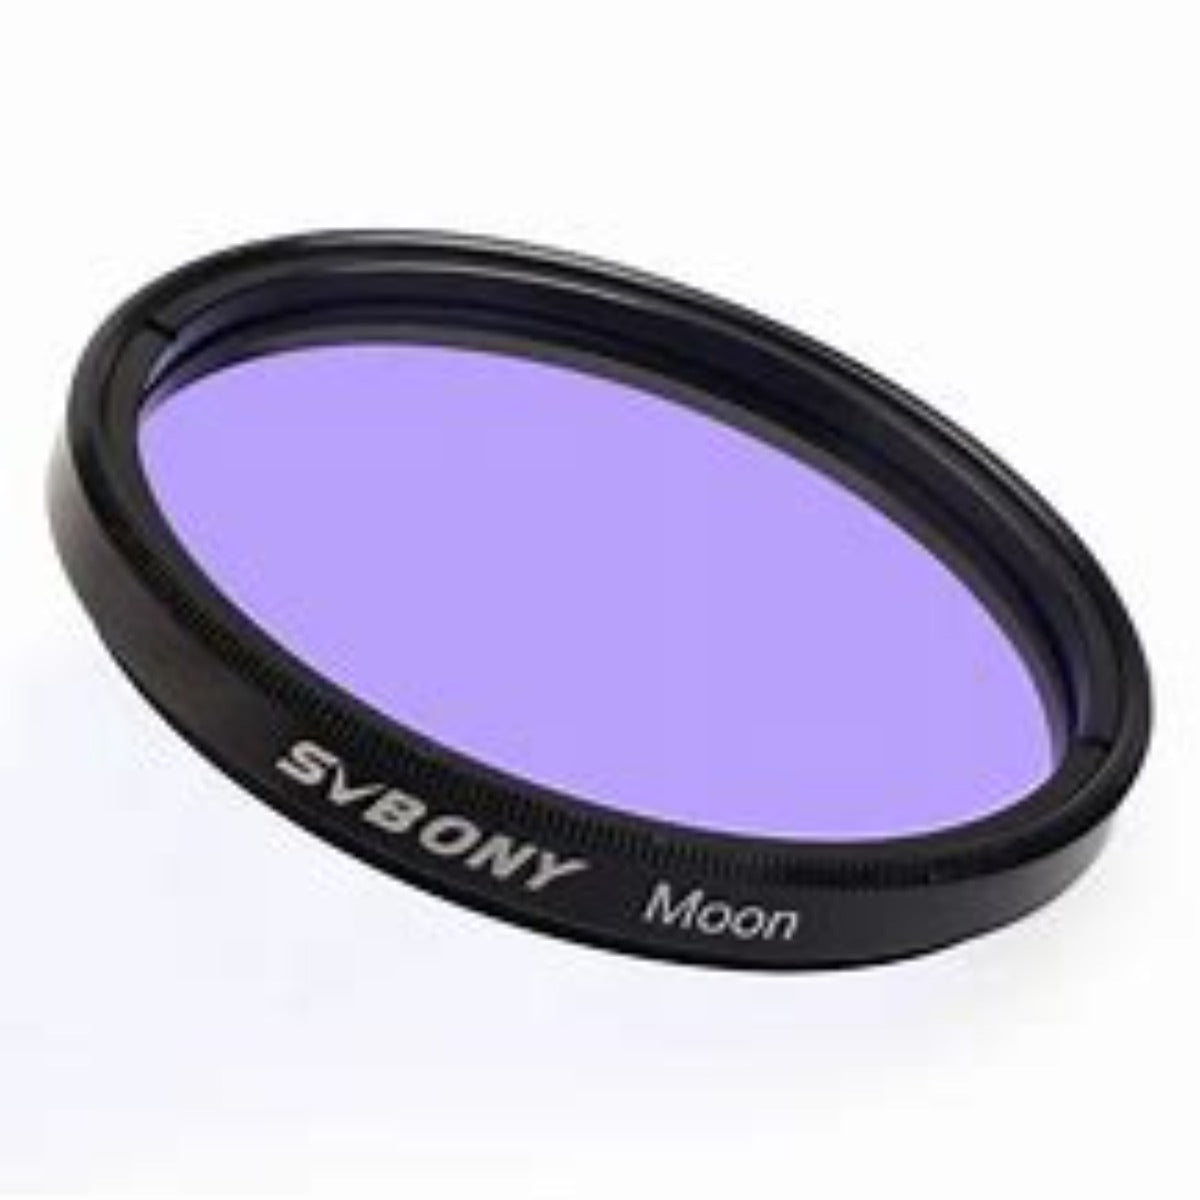 Svbony Moon Filters